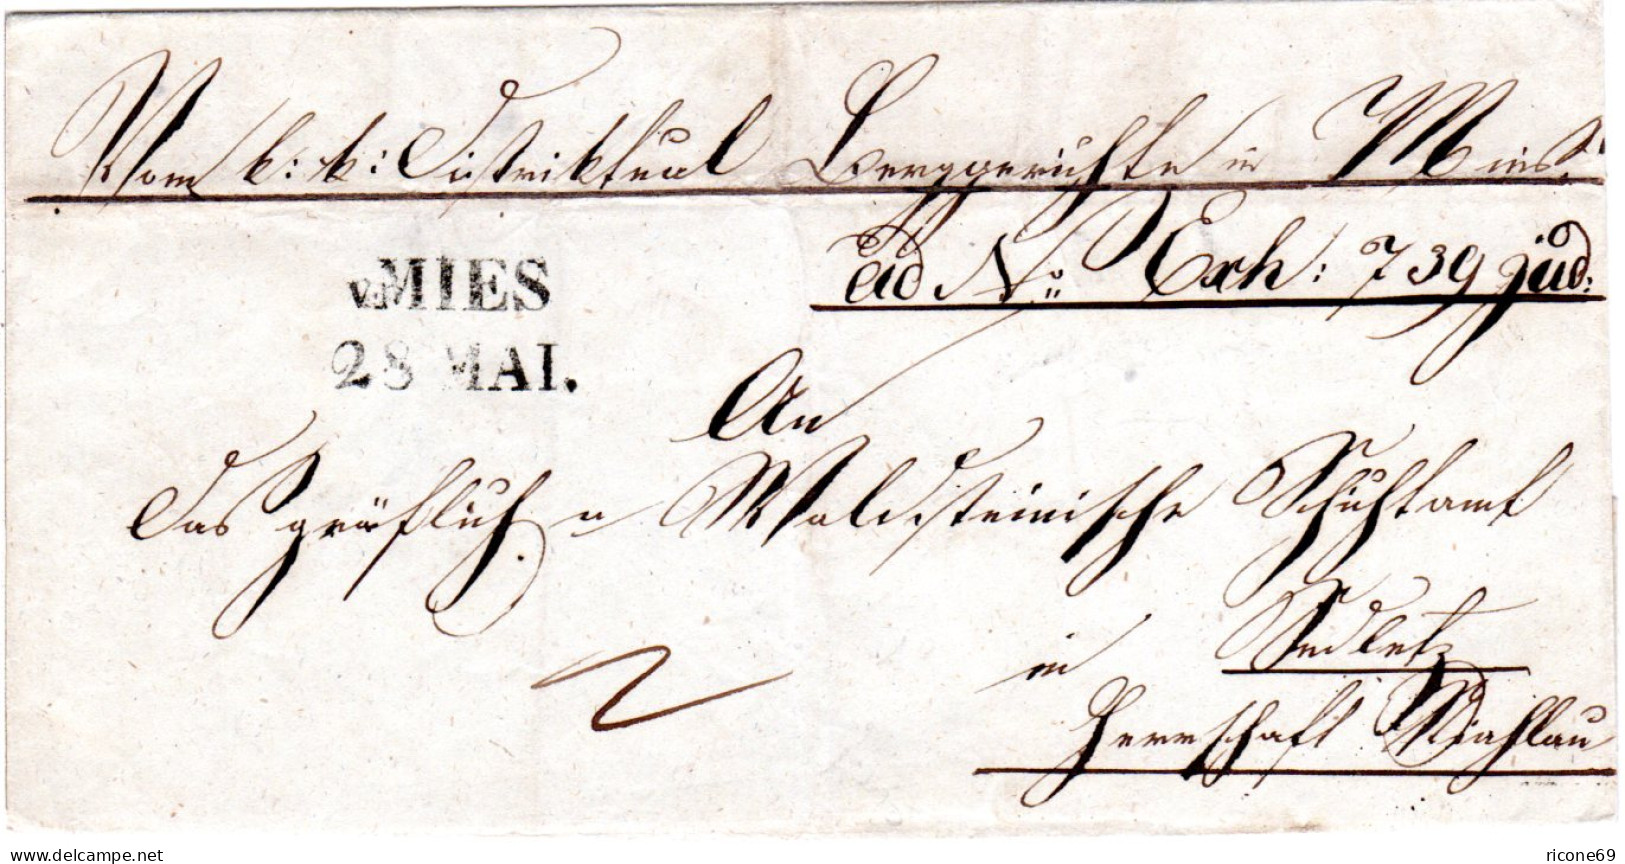 Österreich 1839, Böhmen-L2 V. MIES Auf Gerichts Brief - ...-1850 Prephilately